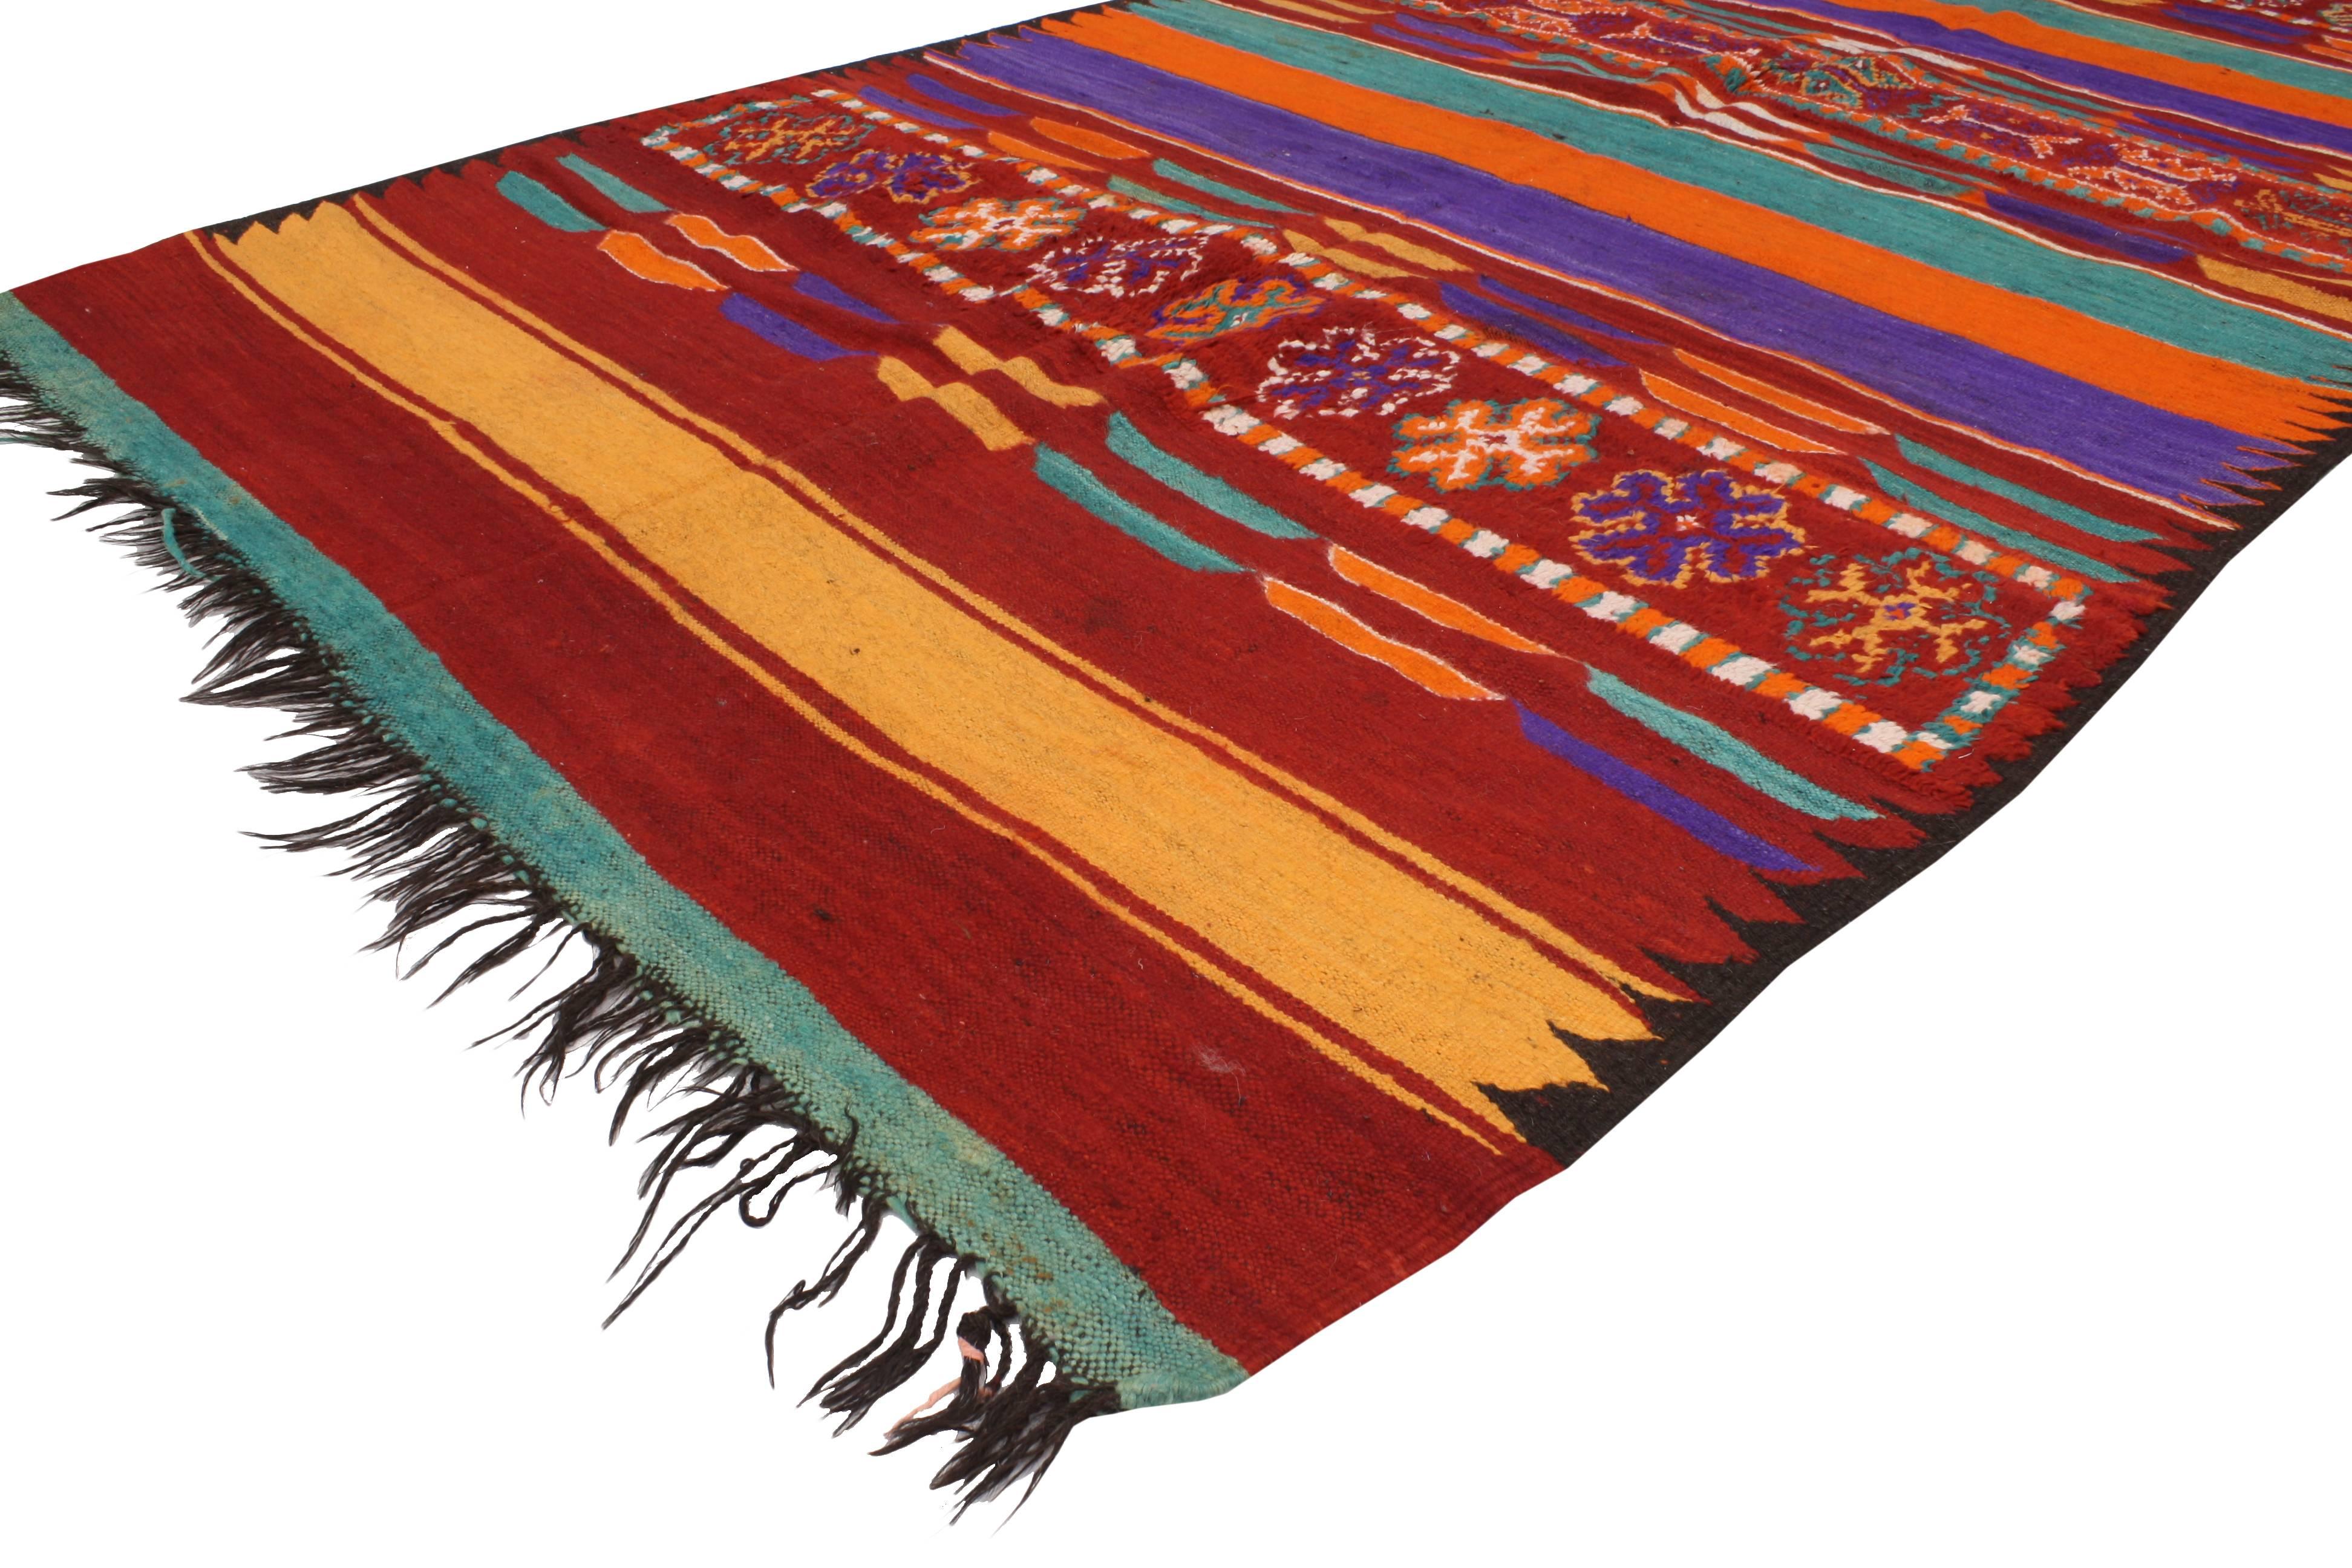 20417 Vintage Berber Moroccan Kilim Rug with Modern Cabin Style, Flat-weave Kilim Rug. Avec ses lignes épurées et ses couleurs vives, ce tapis berbère marocain Kilim vintage tissé à la main permet de créer un look global du monde entier ! Le tapis